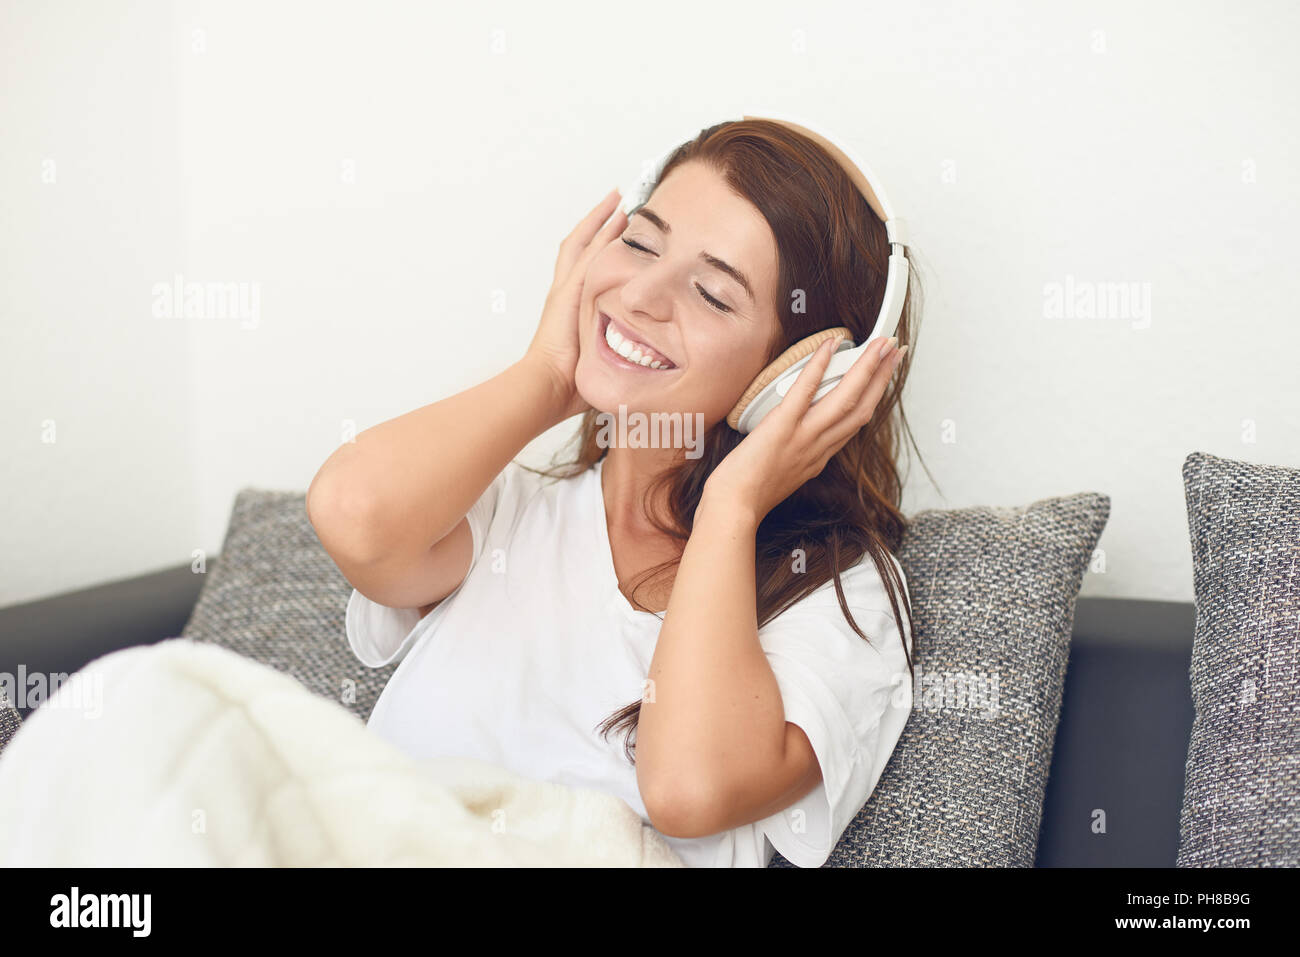 Lächelnd glücklich attraktive quirlige junge Frau auf ein graues Sofa mit einer Decke über die Beine Hören von Musik über Kopfhörer Stockfoto